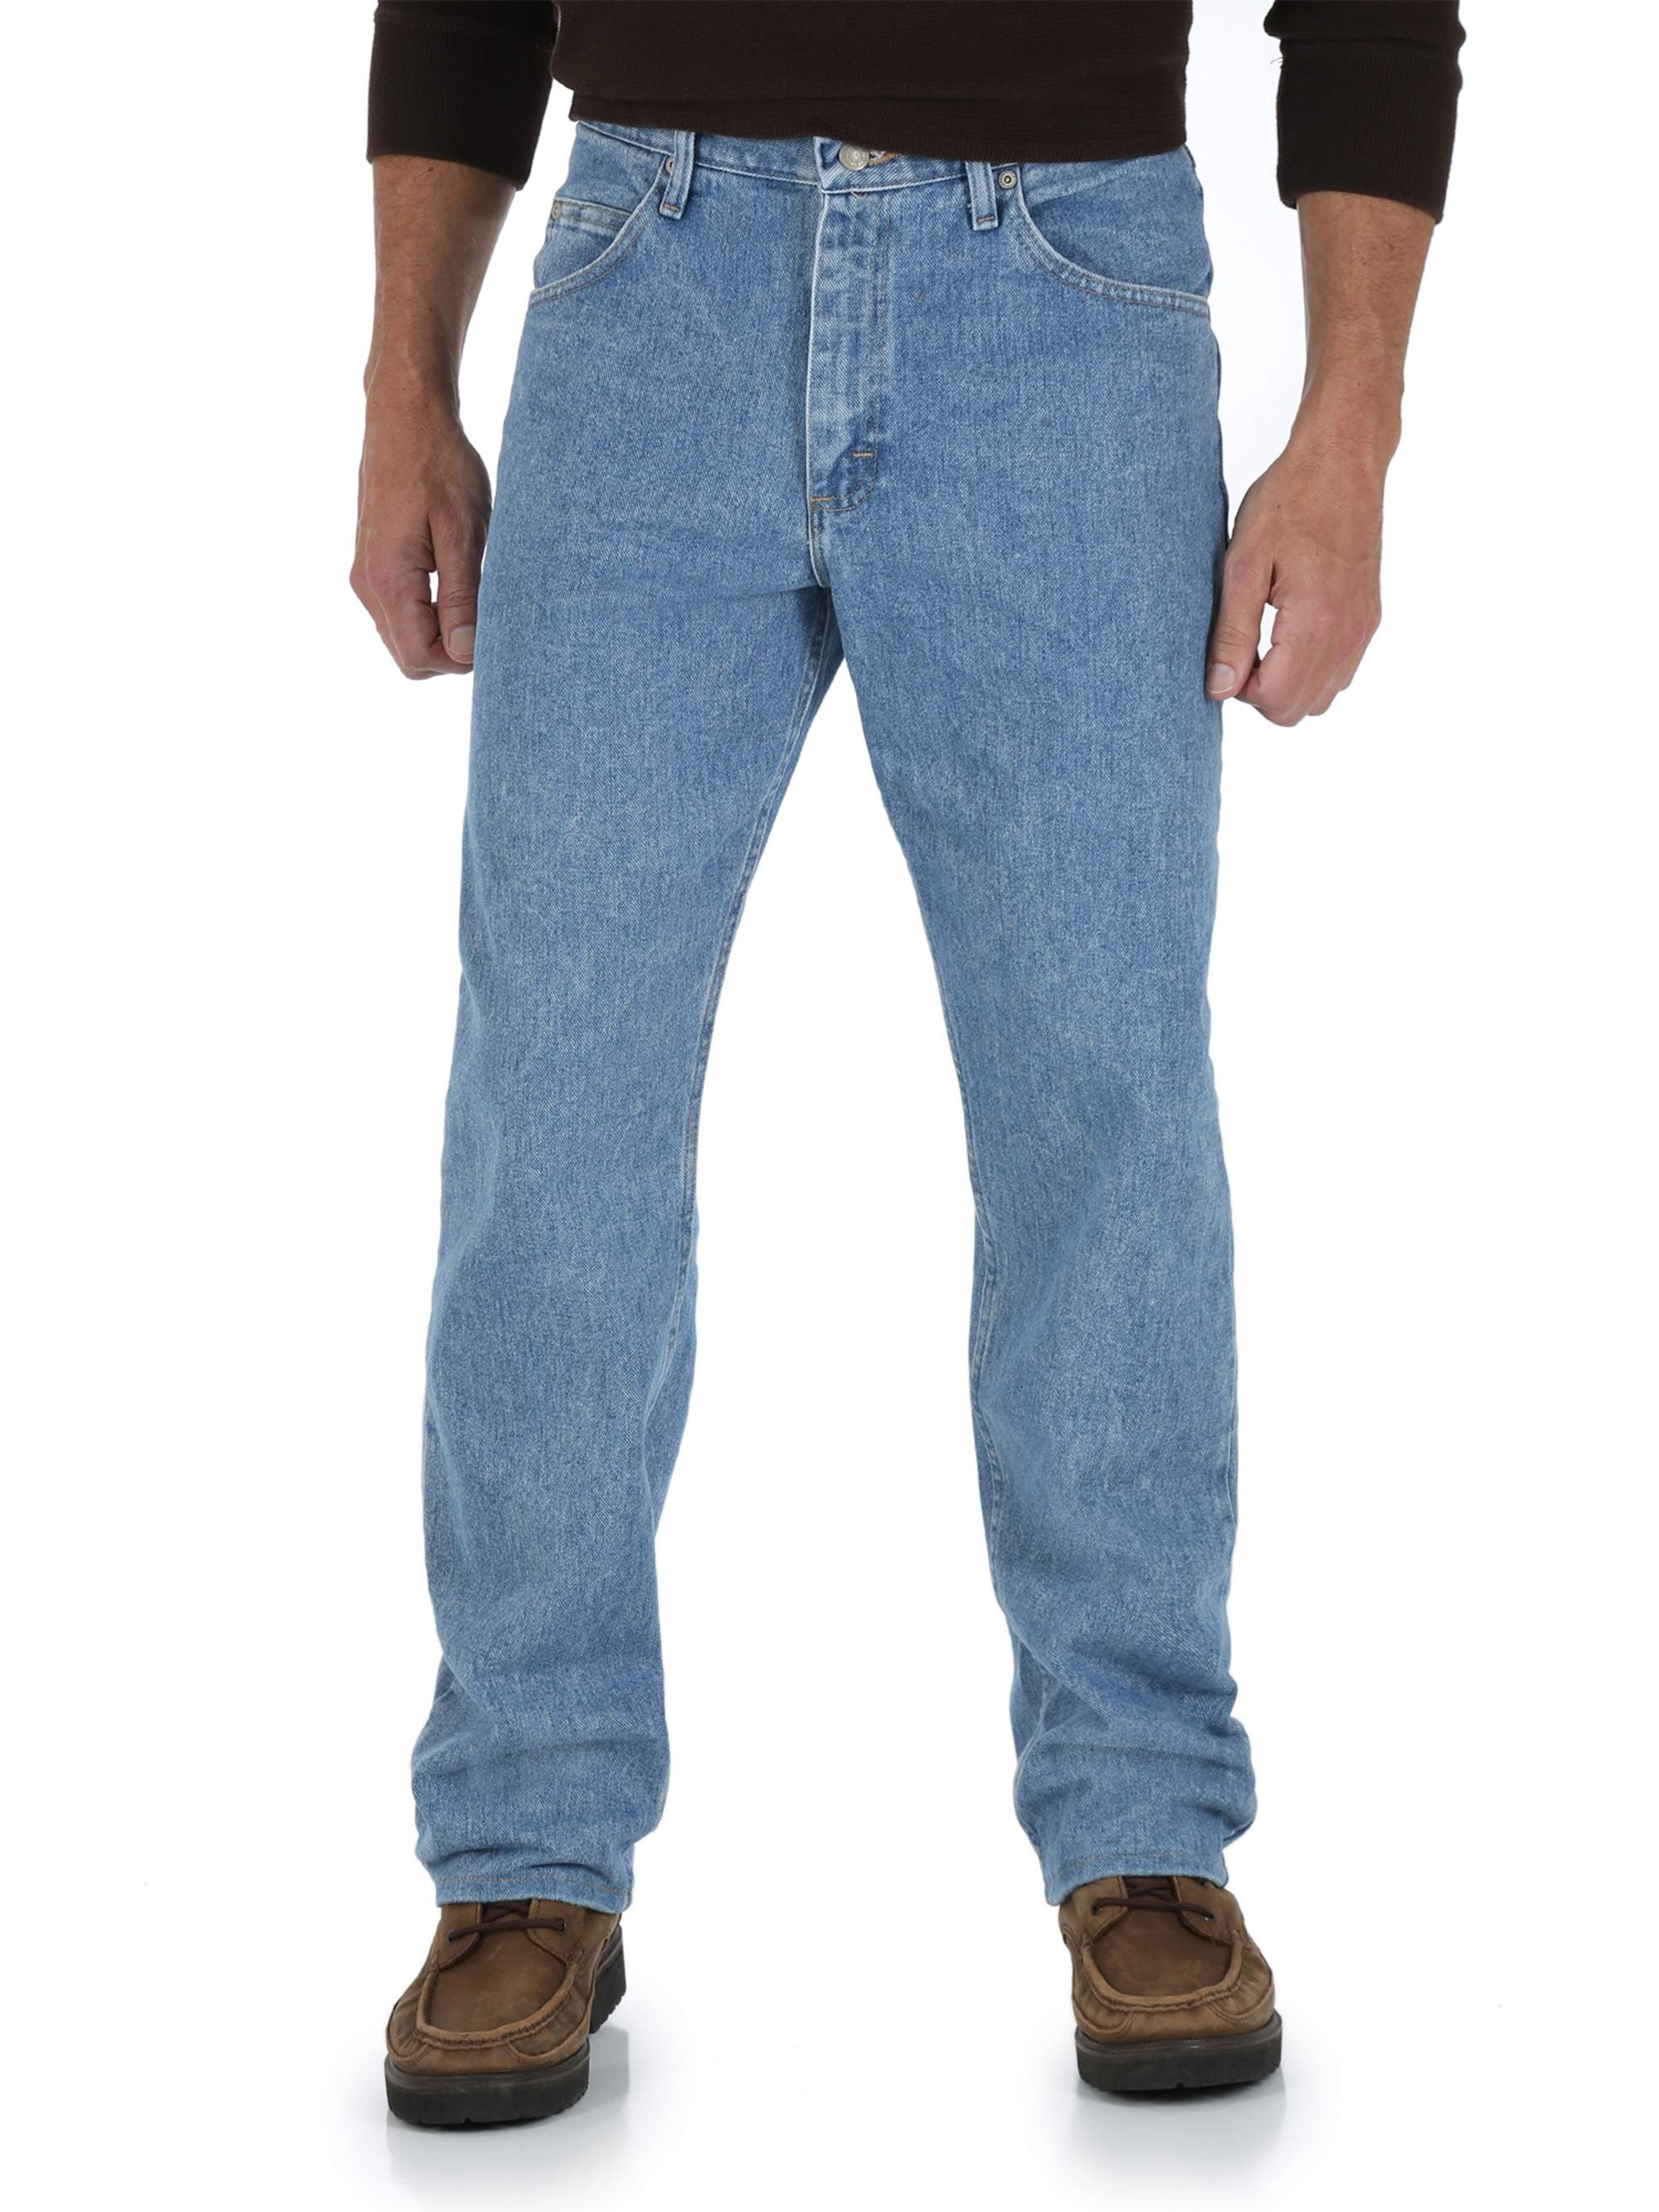 Wrangler - Wrangler Men's Relaxed Fit Jeans - Walmart.com